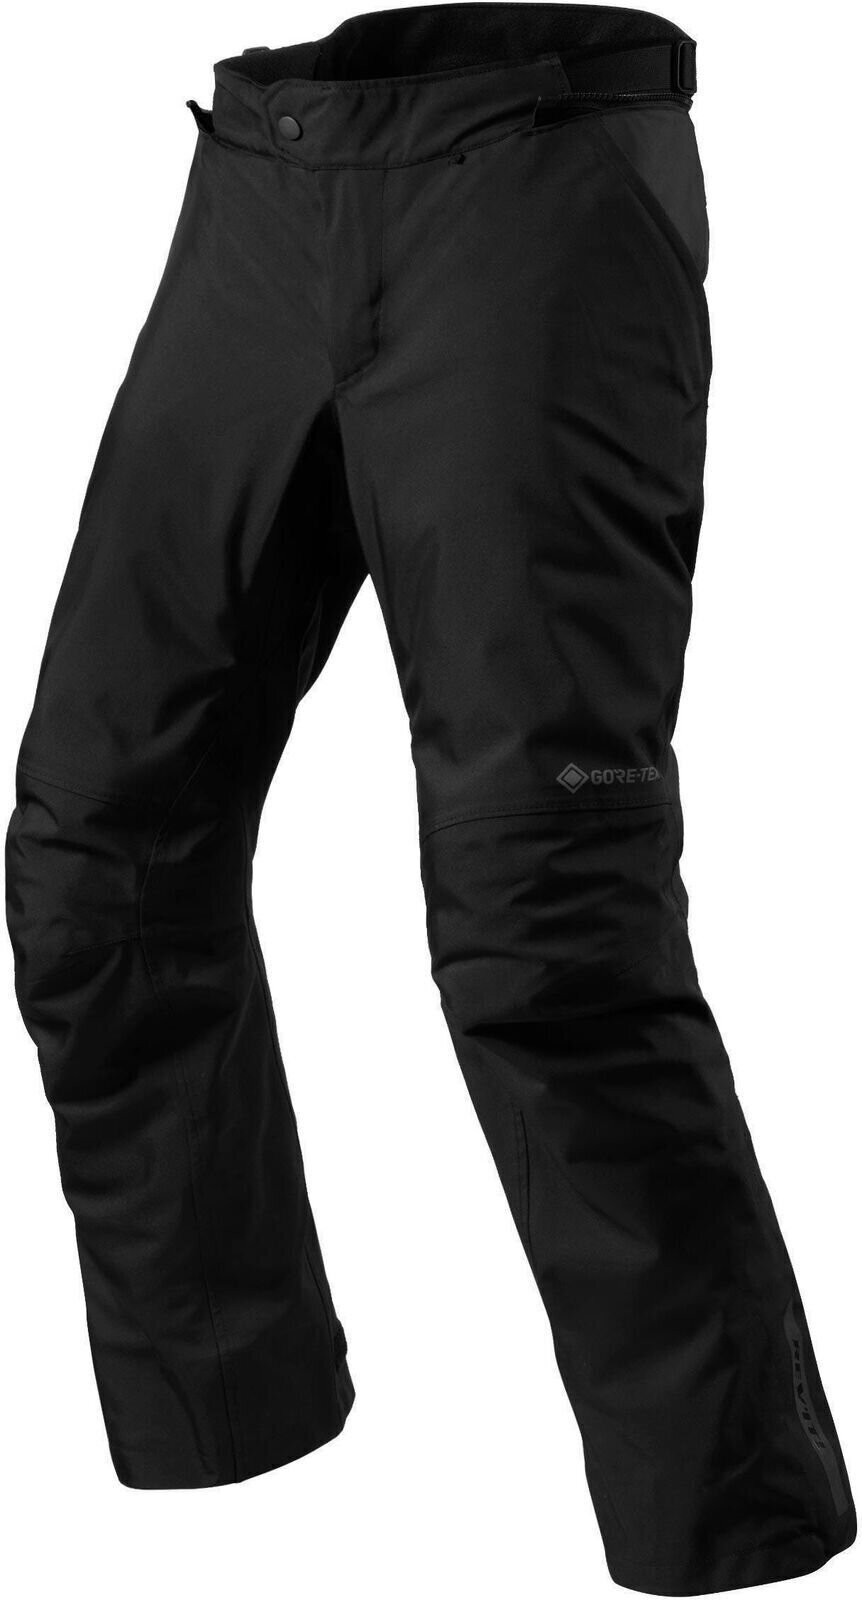 Textiel broek Rev'it! Pants Vertical GTX Black L Regular Textiel broek